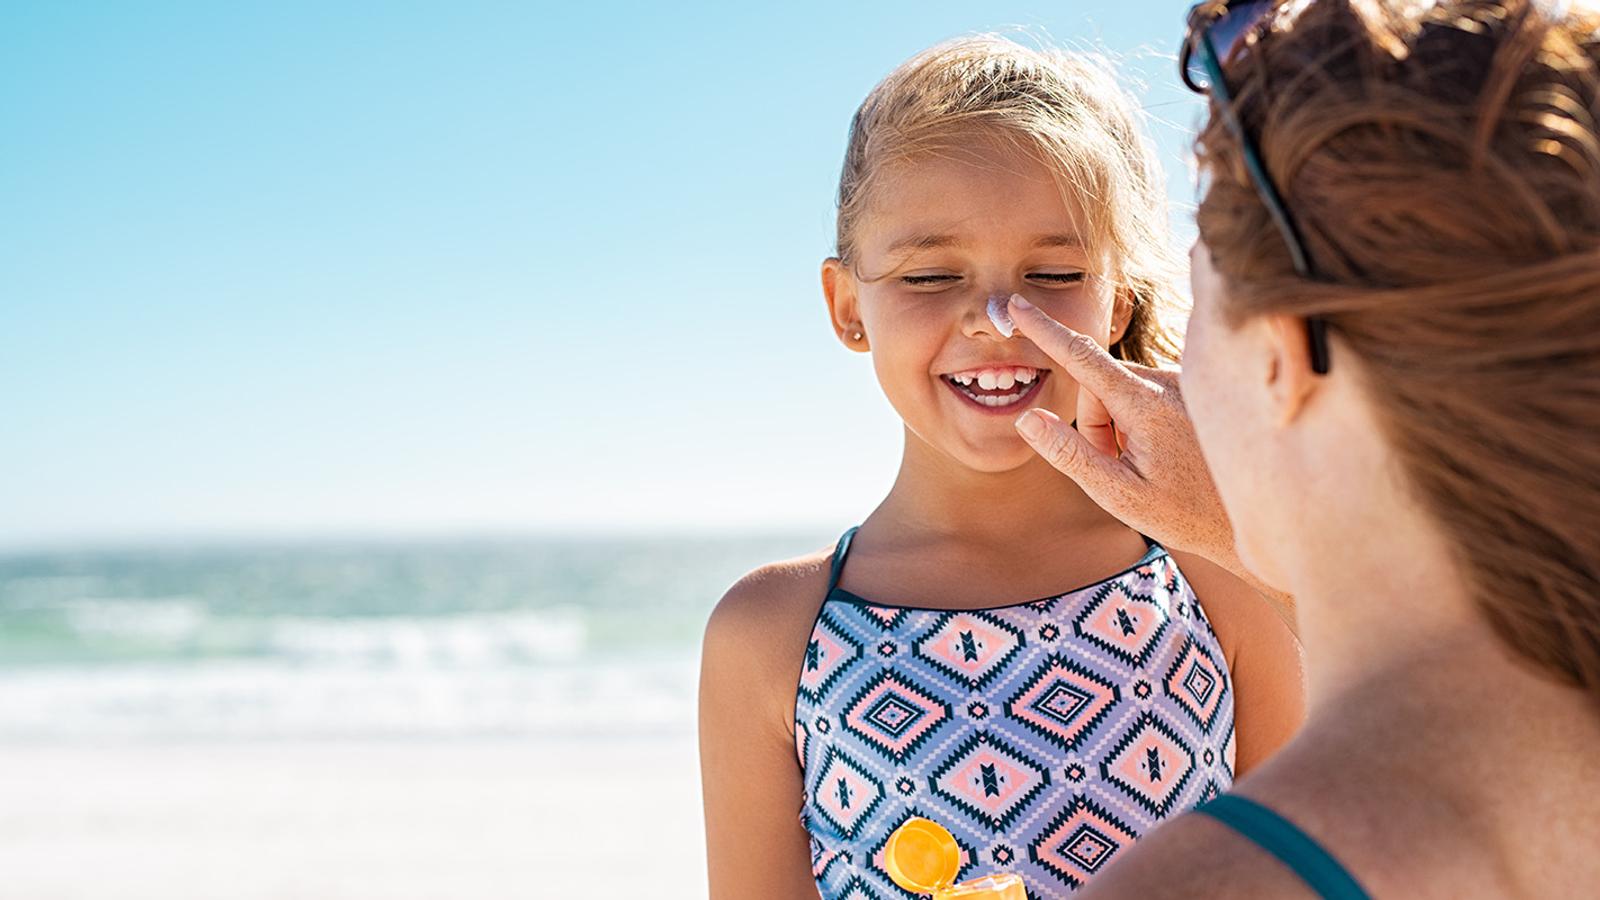 Ist Kinderhaut empfindlicher oder resistenter gegenüber Sonnenlicht?